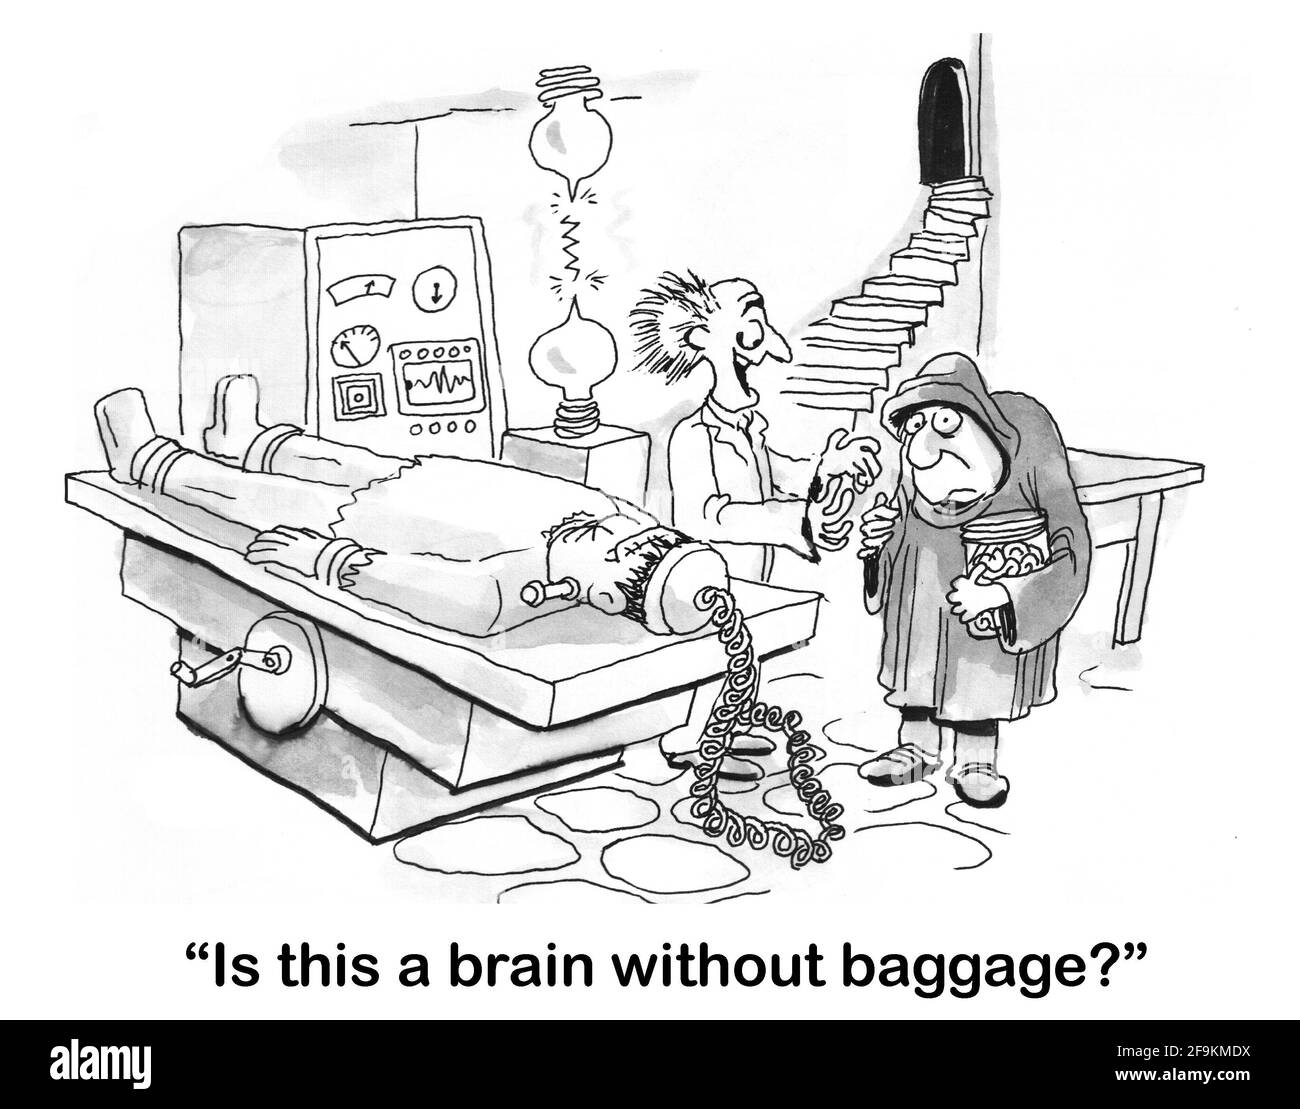 Un scientifique fou demande à son assistant s'il a apporté un cerveau sans bagages. Banque D'Images